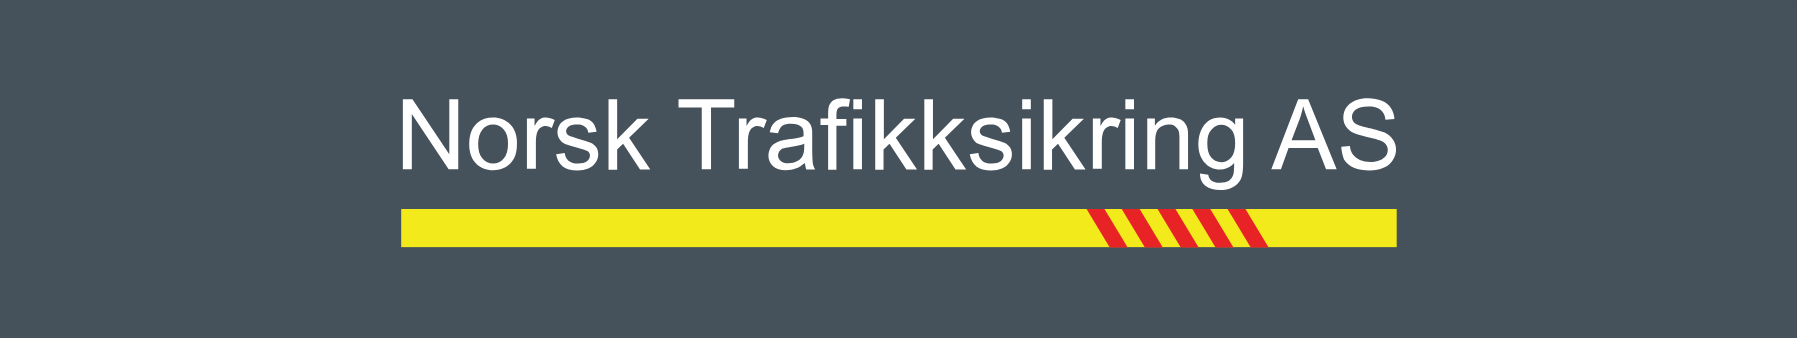 Norsk Trafikksikring AS logo